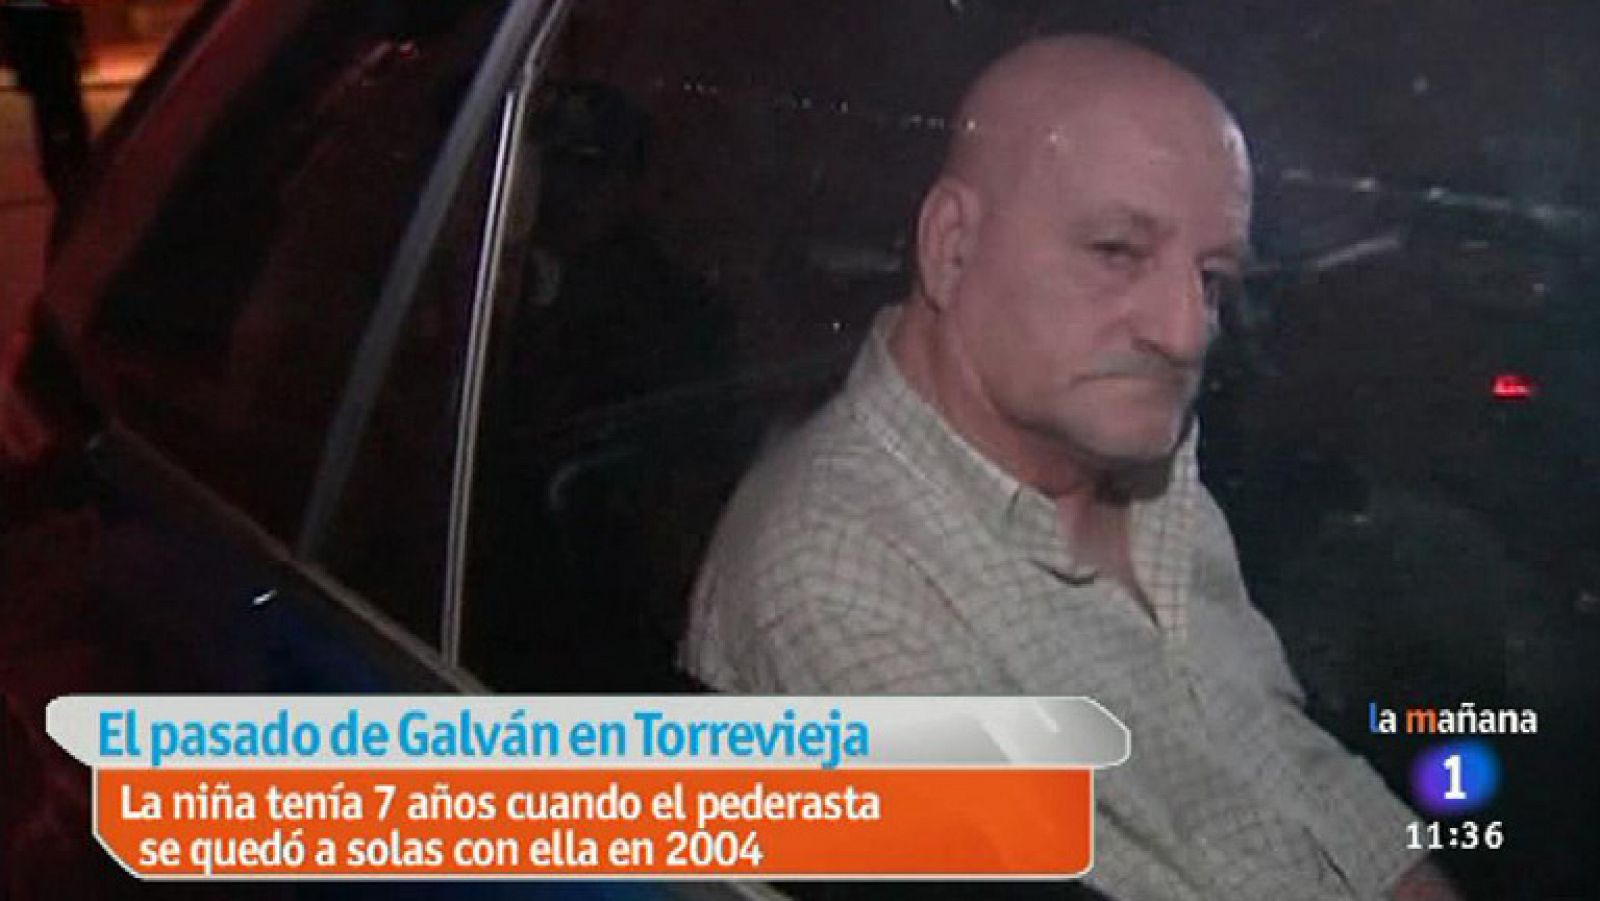 La mañana - El pasado del pederasta Galván en Torrevieja